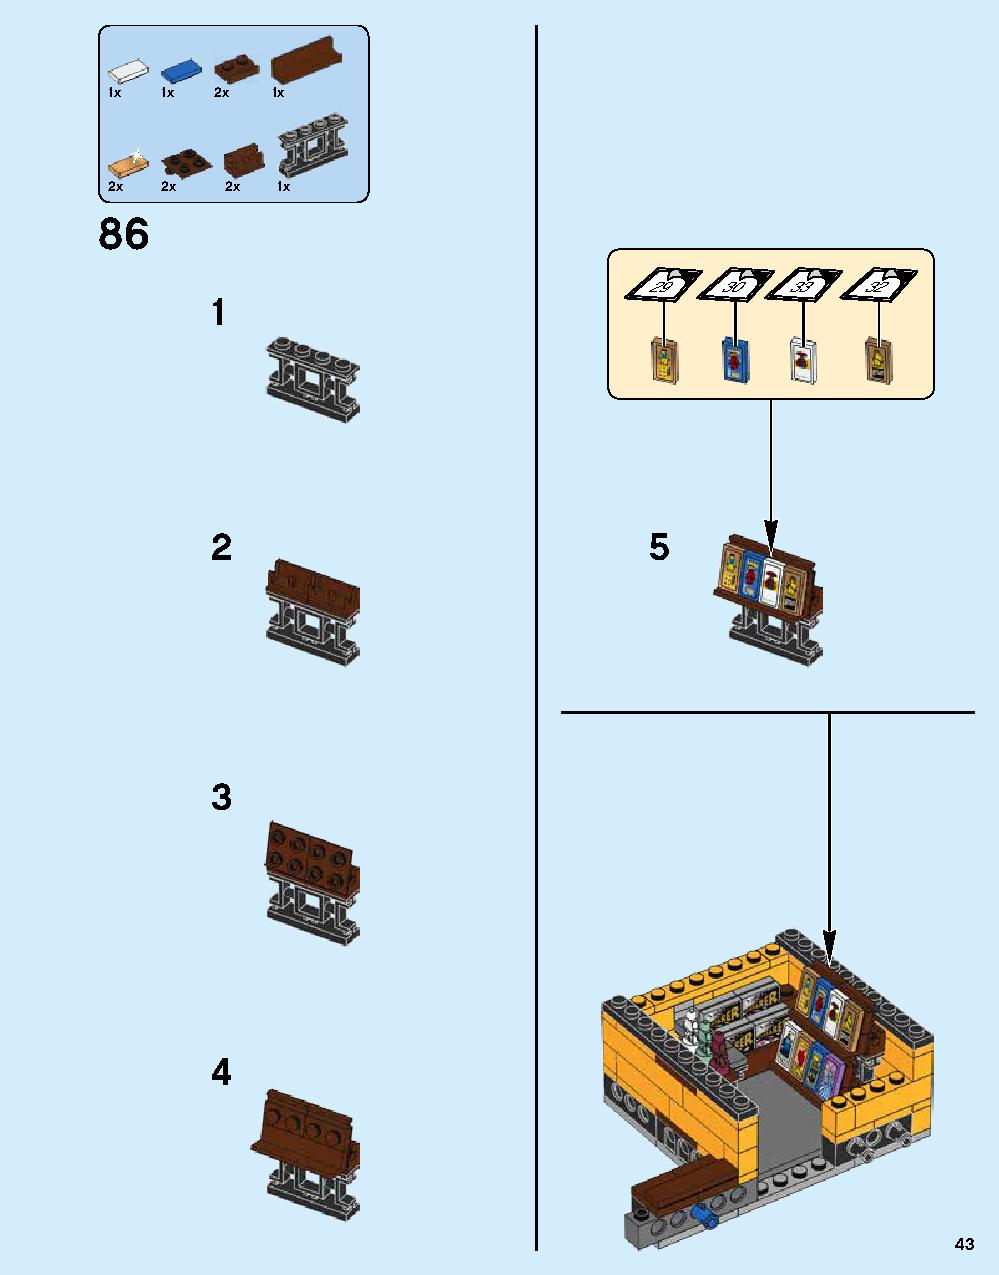 ニンジャゴー シティ 70620 レゴの商品情報 レゴの説明書・組立方法 43 page